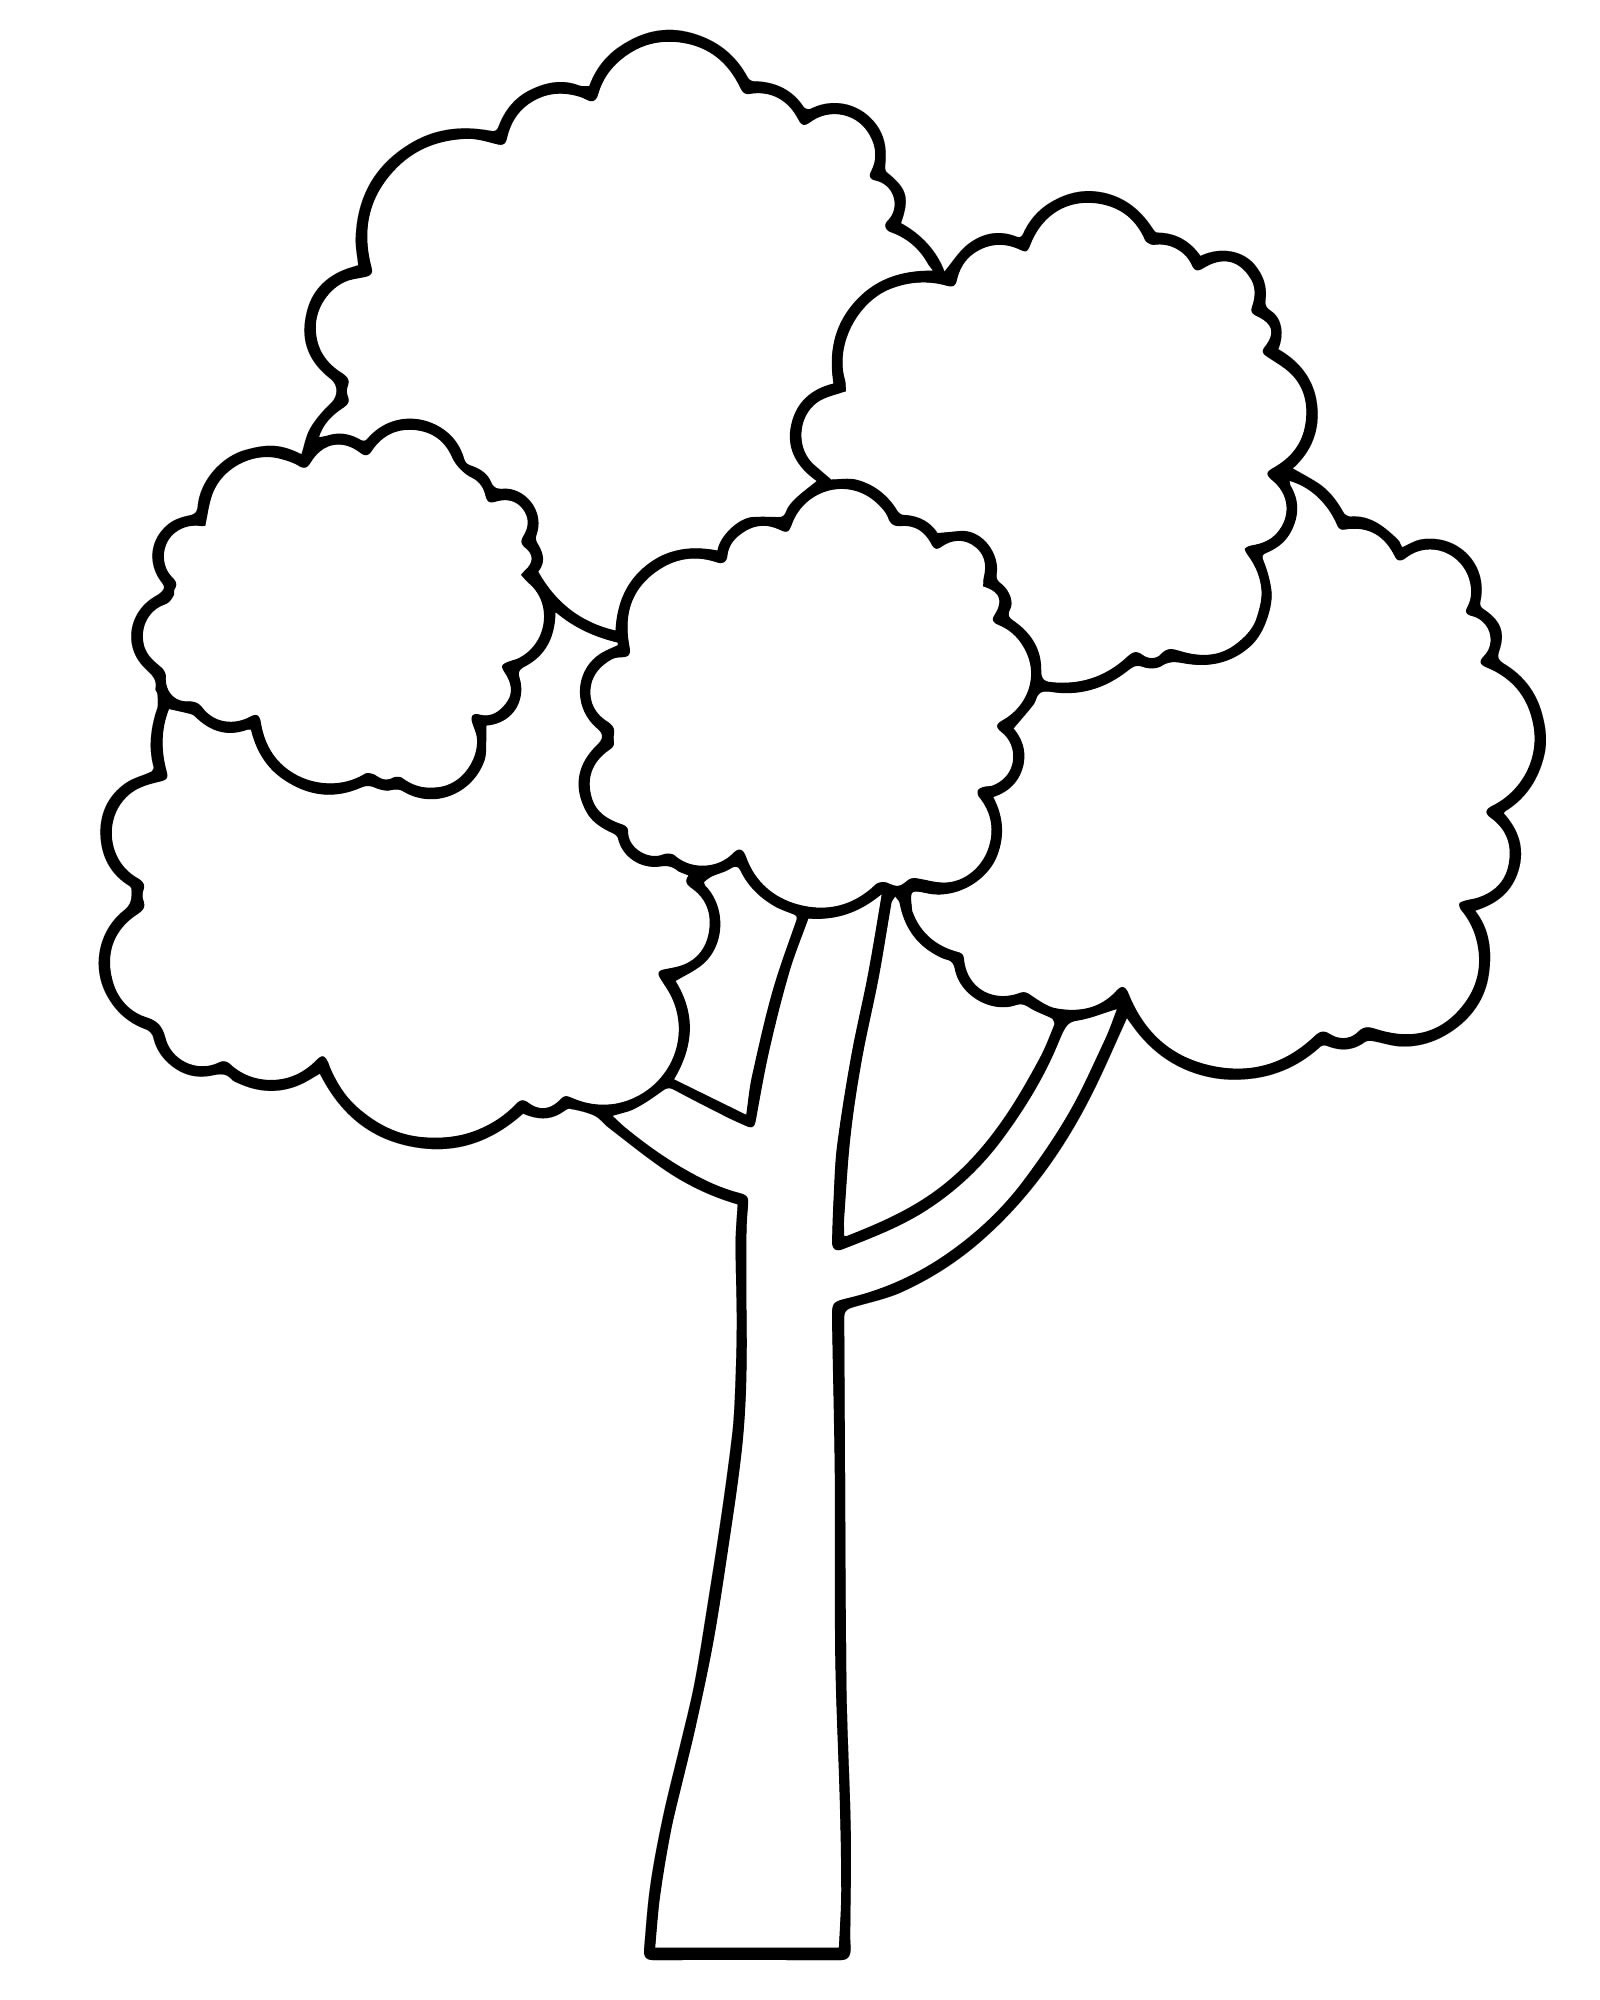 Раскраска для детей 3-4 года дерево елка распечатать